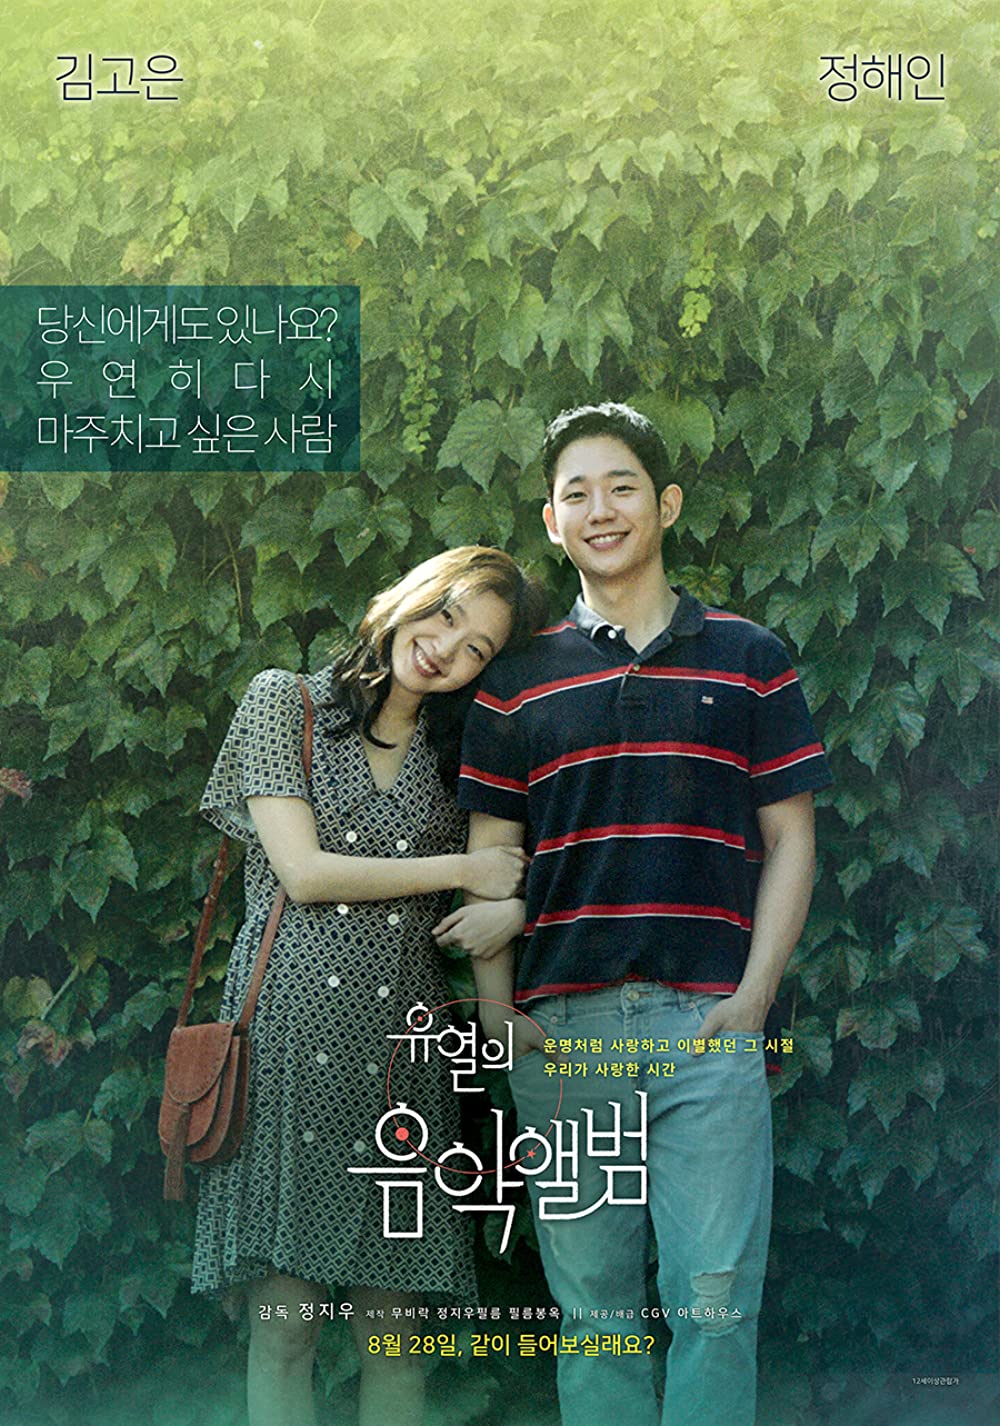 11 Film drama Korea romantis terbaik, ceritanya bikin hati meleleh